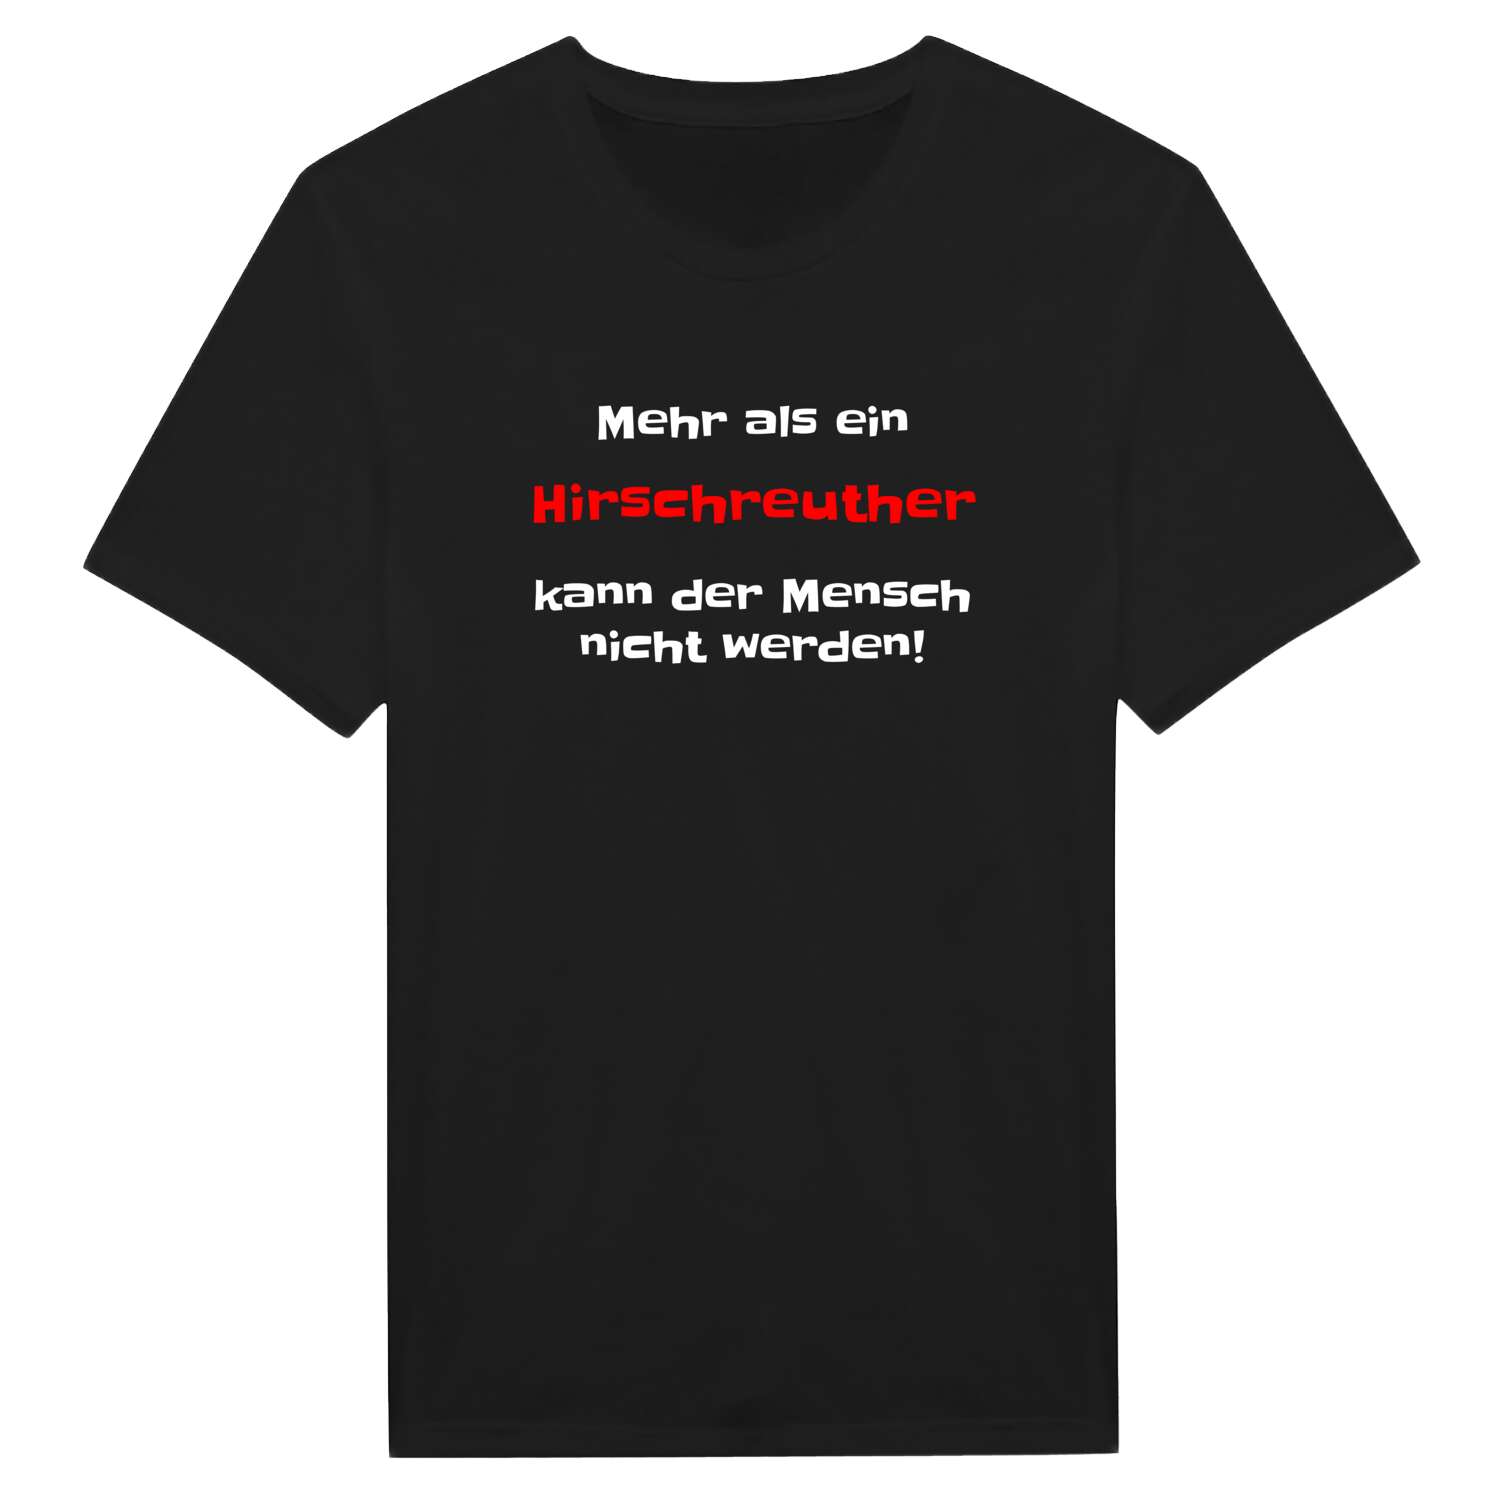 Hirschreuth T-Shirt »Mehr als ein«